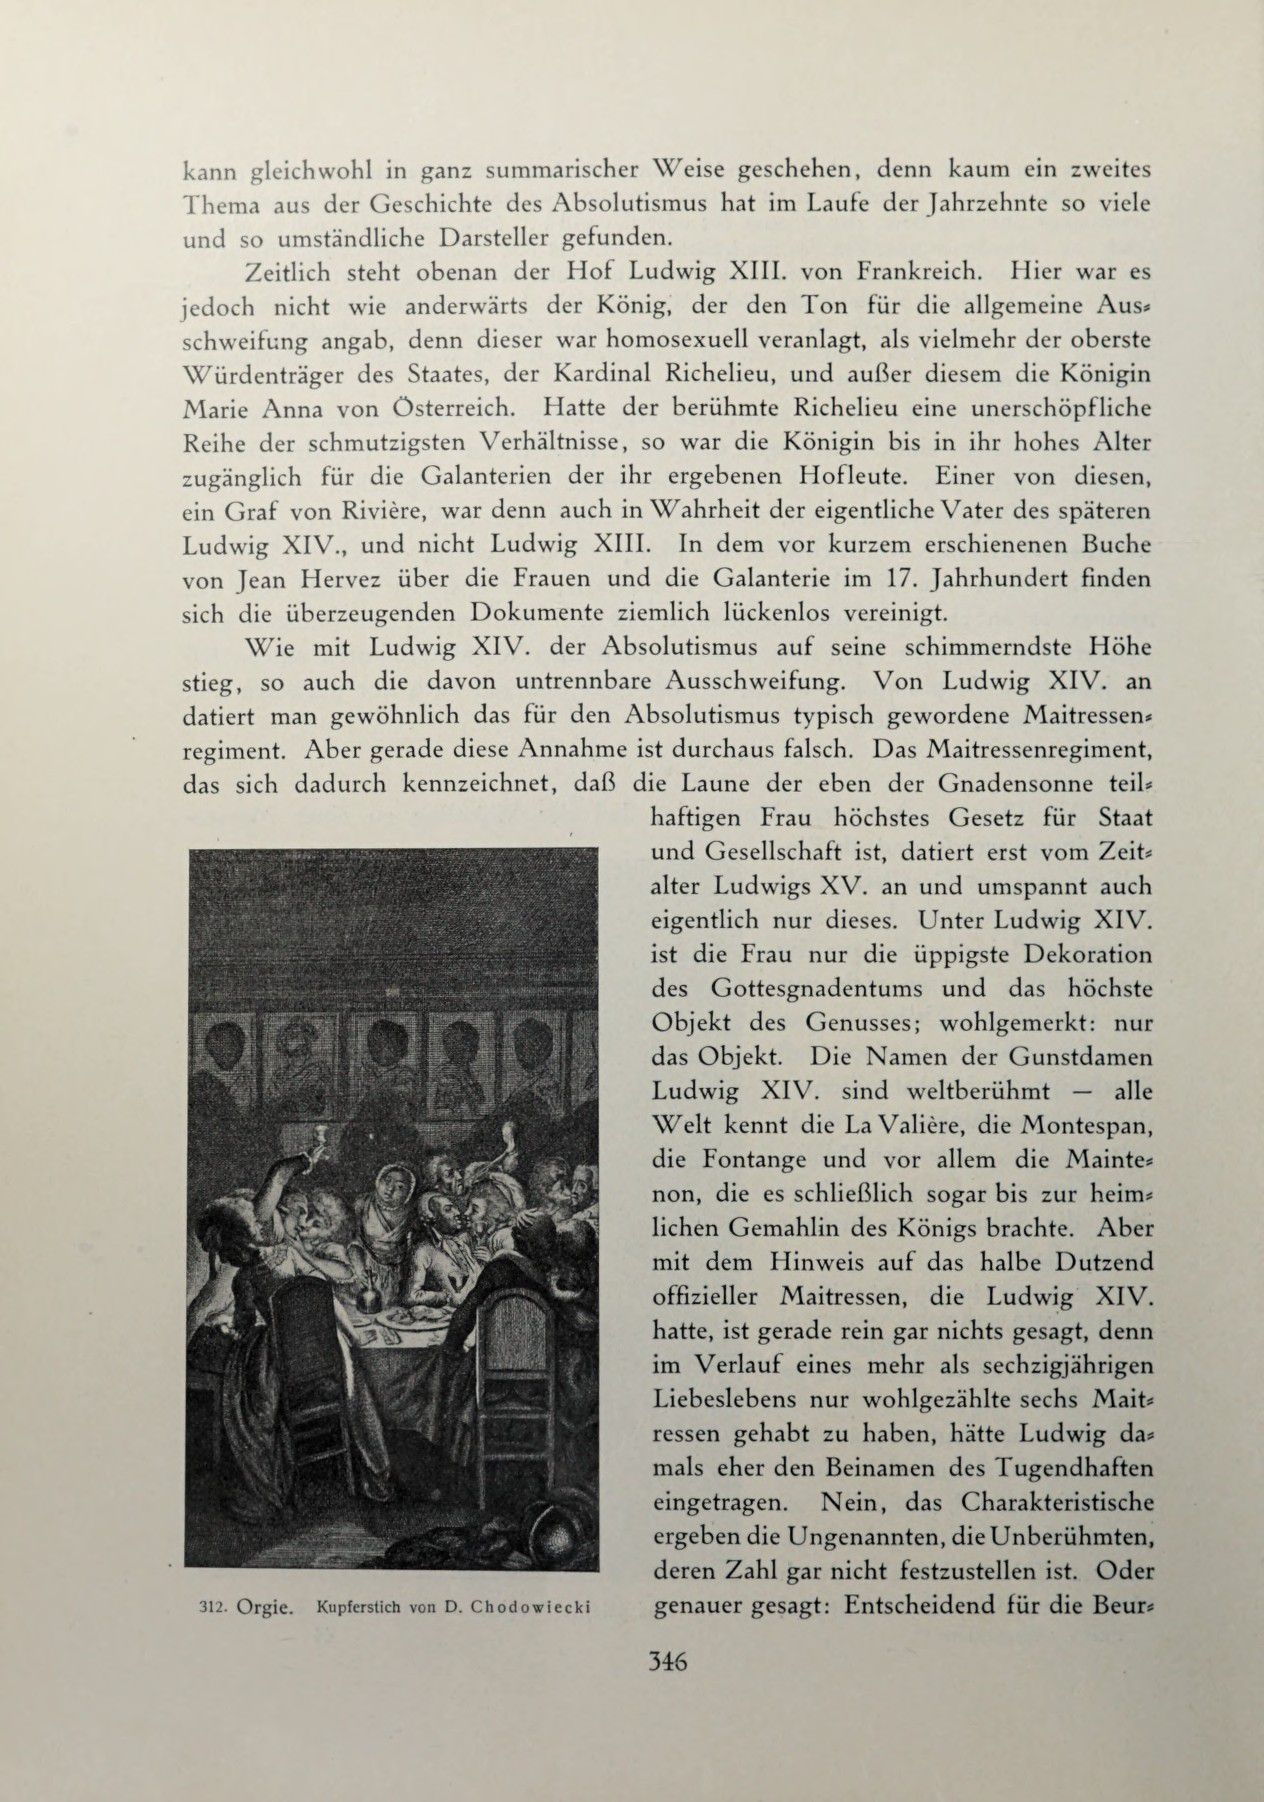 [Eduard Fuchs] Illustrierte Sittengeschichte vom Mittelalter bis zur Gegenwart: Bd. 2. and Ergänzungsband. Die galante Zeit [German] 503